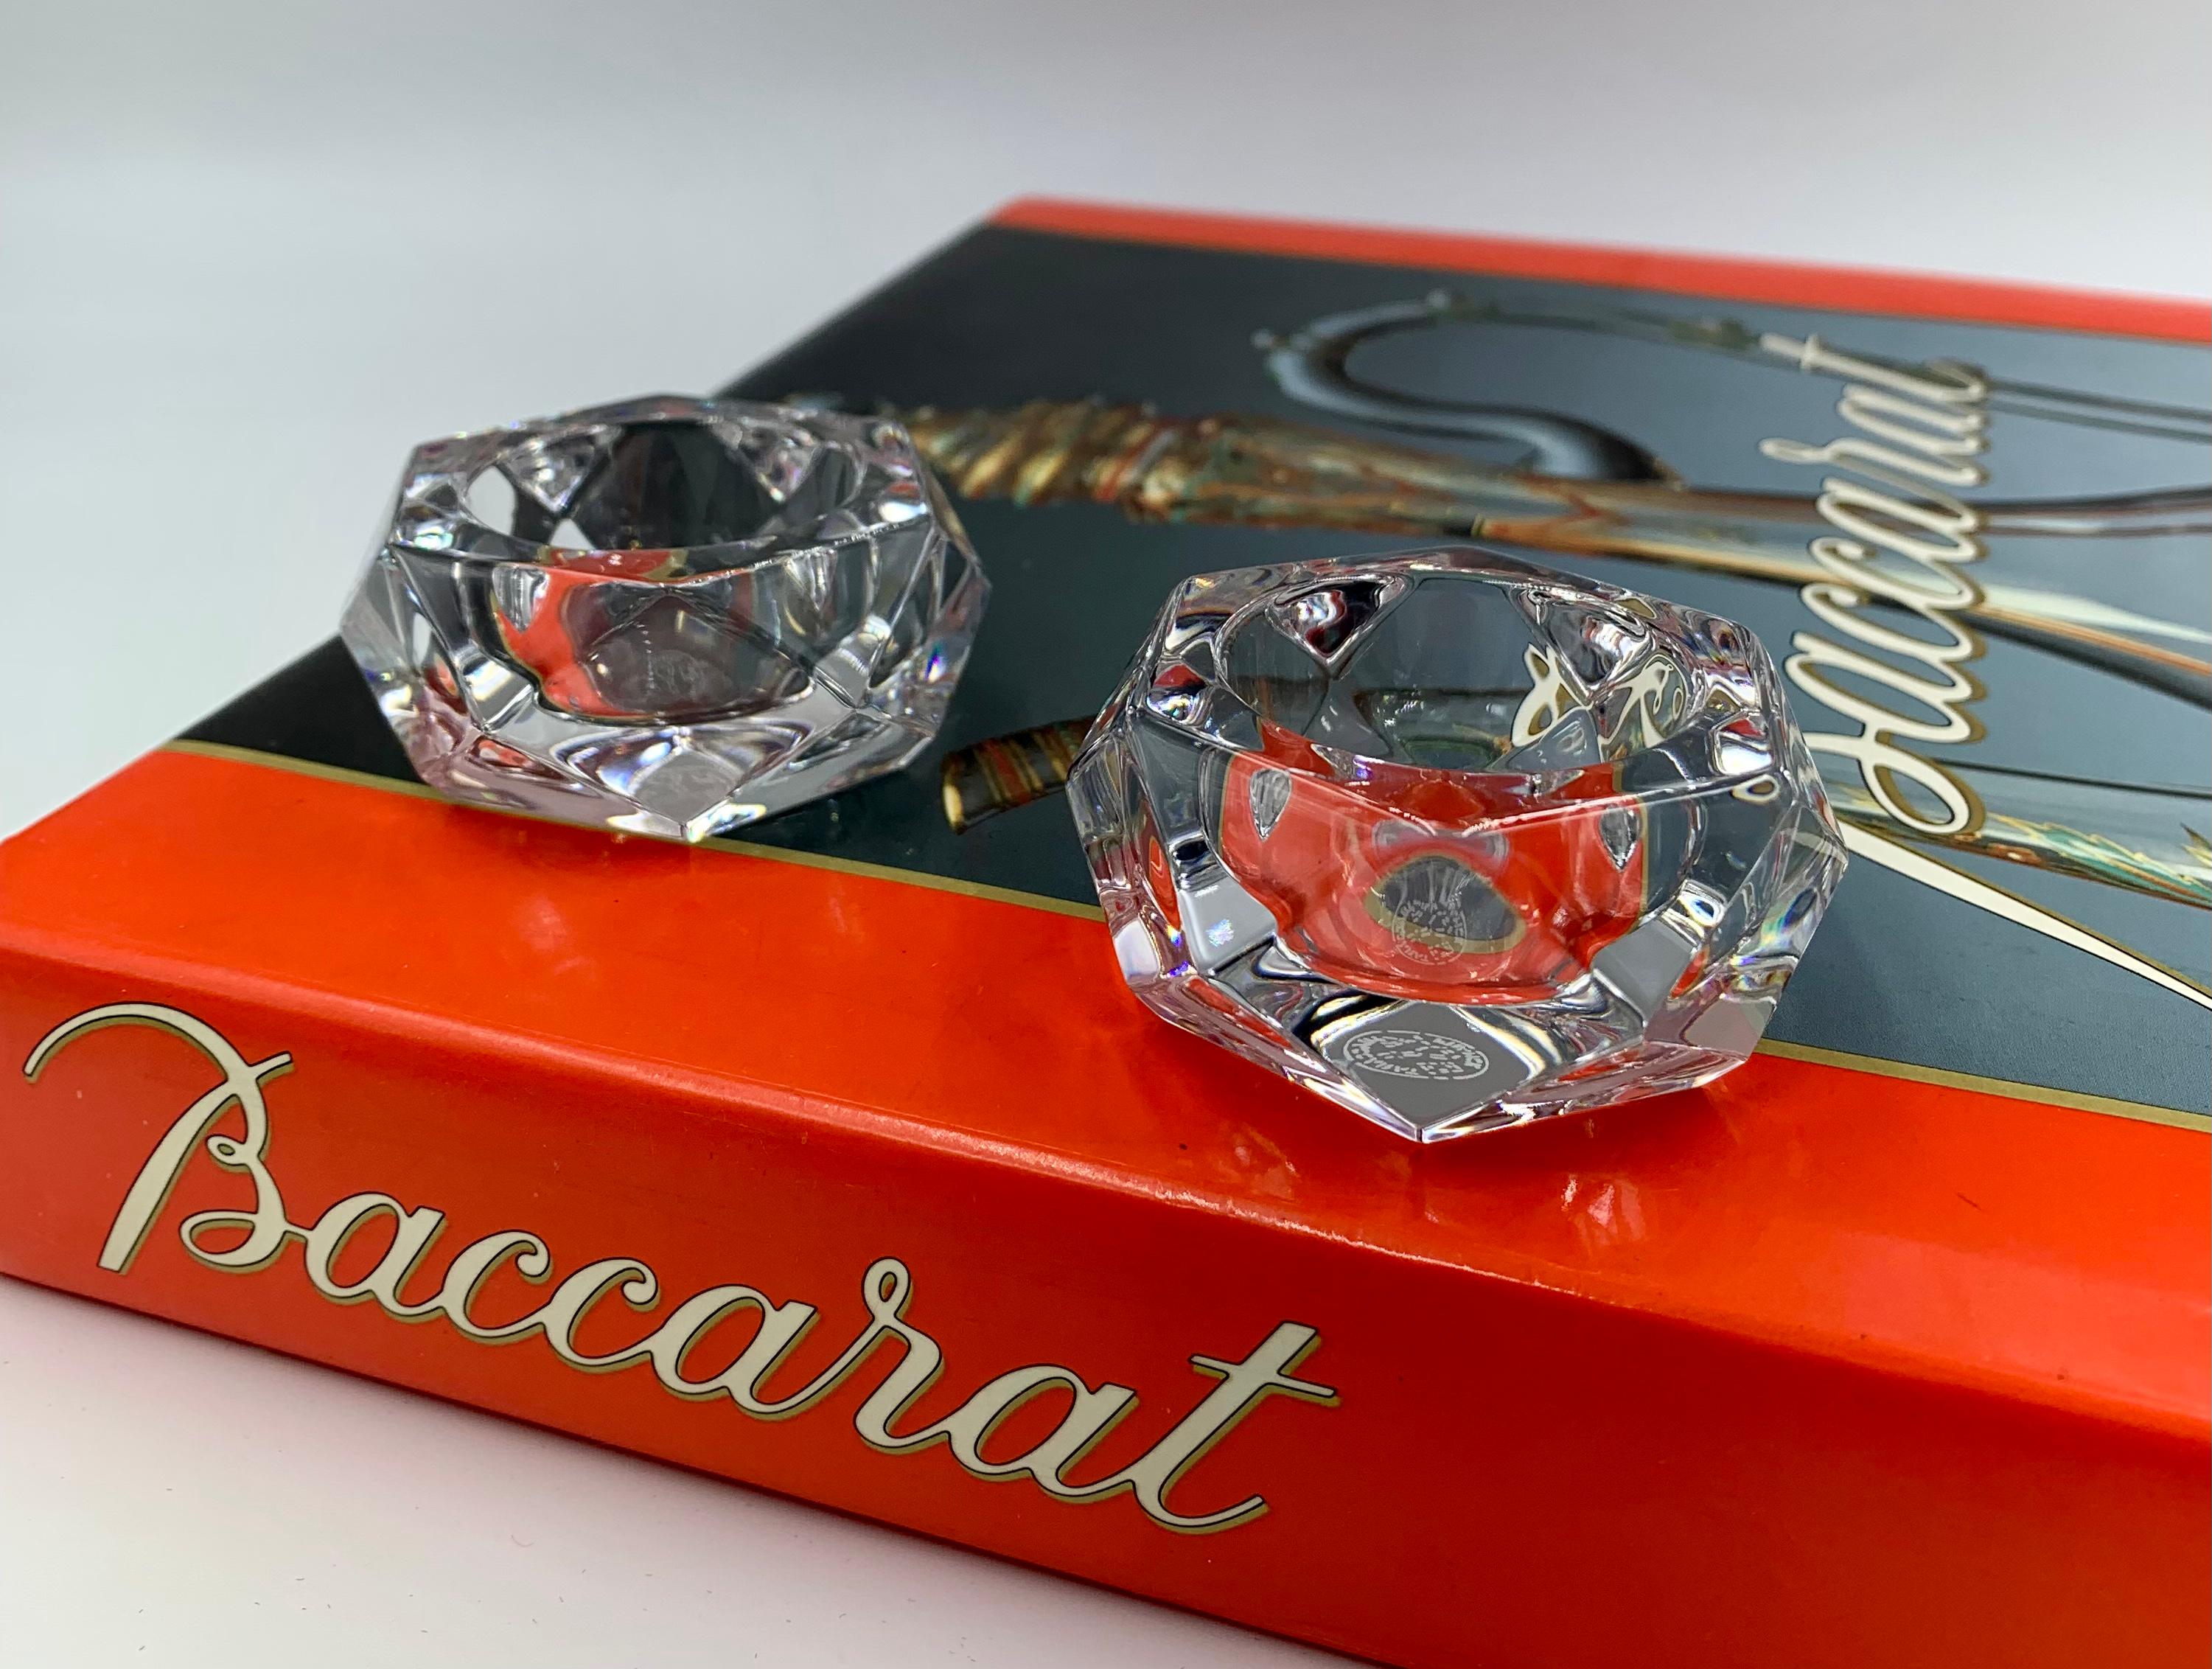 Feines Paar Baccarat Kristallsalzkeller in ausgezeichnetem Zustand mit Originalverpackung. Die Seiten sind rauten- und dreieckförmig facettiert, die Oberseite hat eine runde Aussparung für das Salz. Signiert auf den Sockeln mit der runden